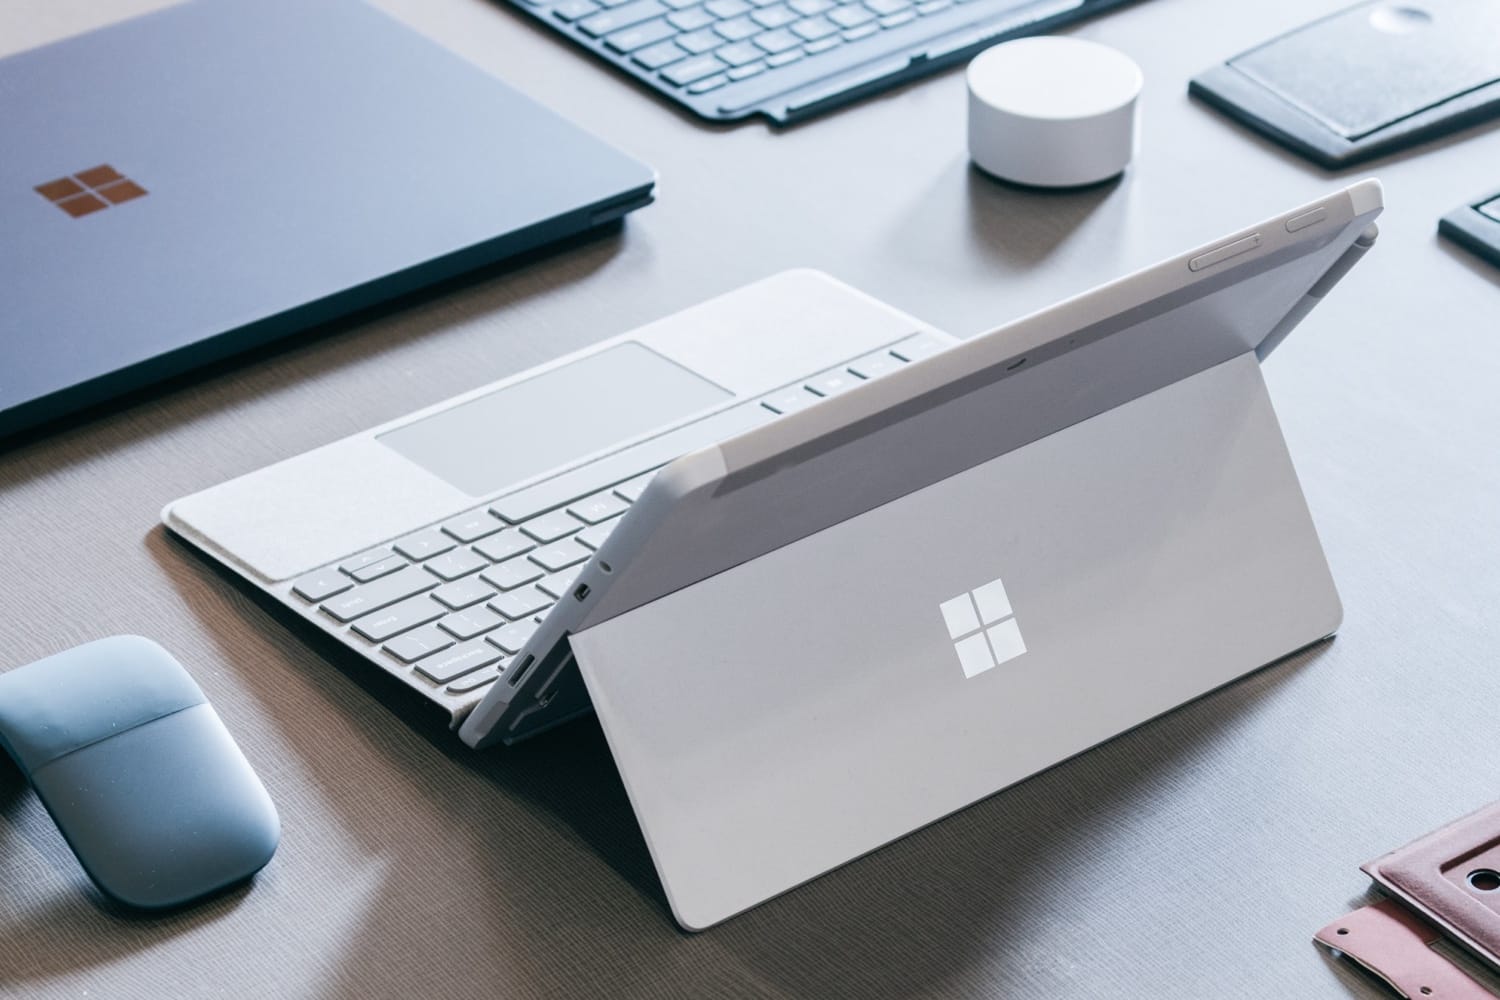 Microsoft Surface Go ни в коем случае нельзя покупать